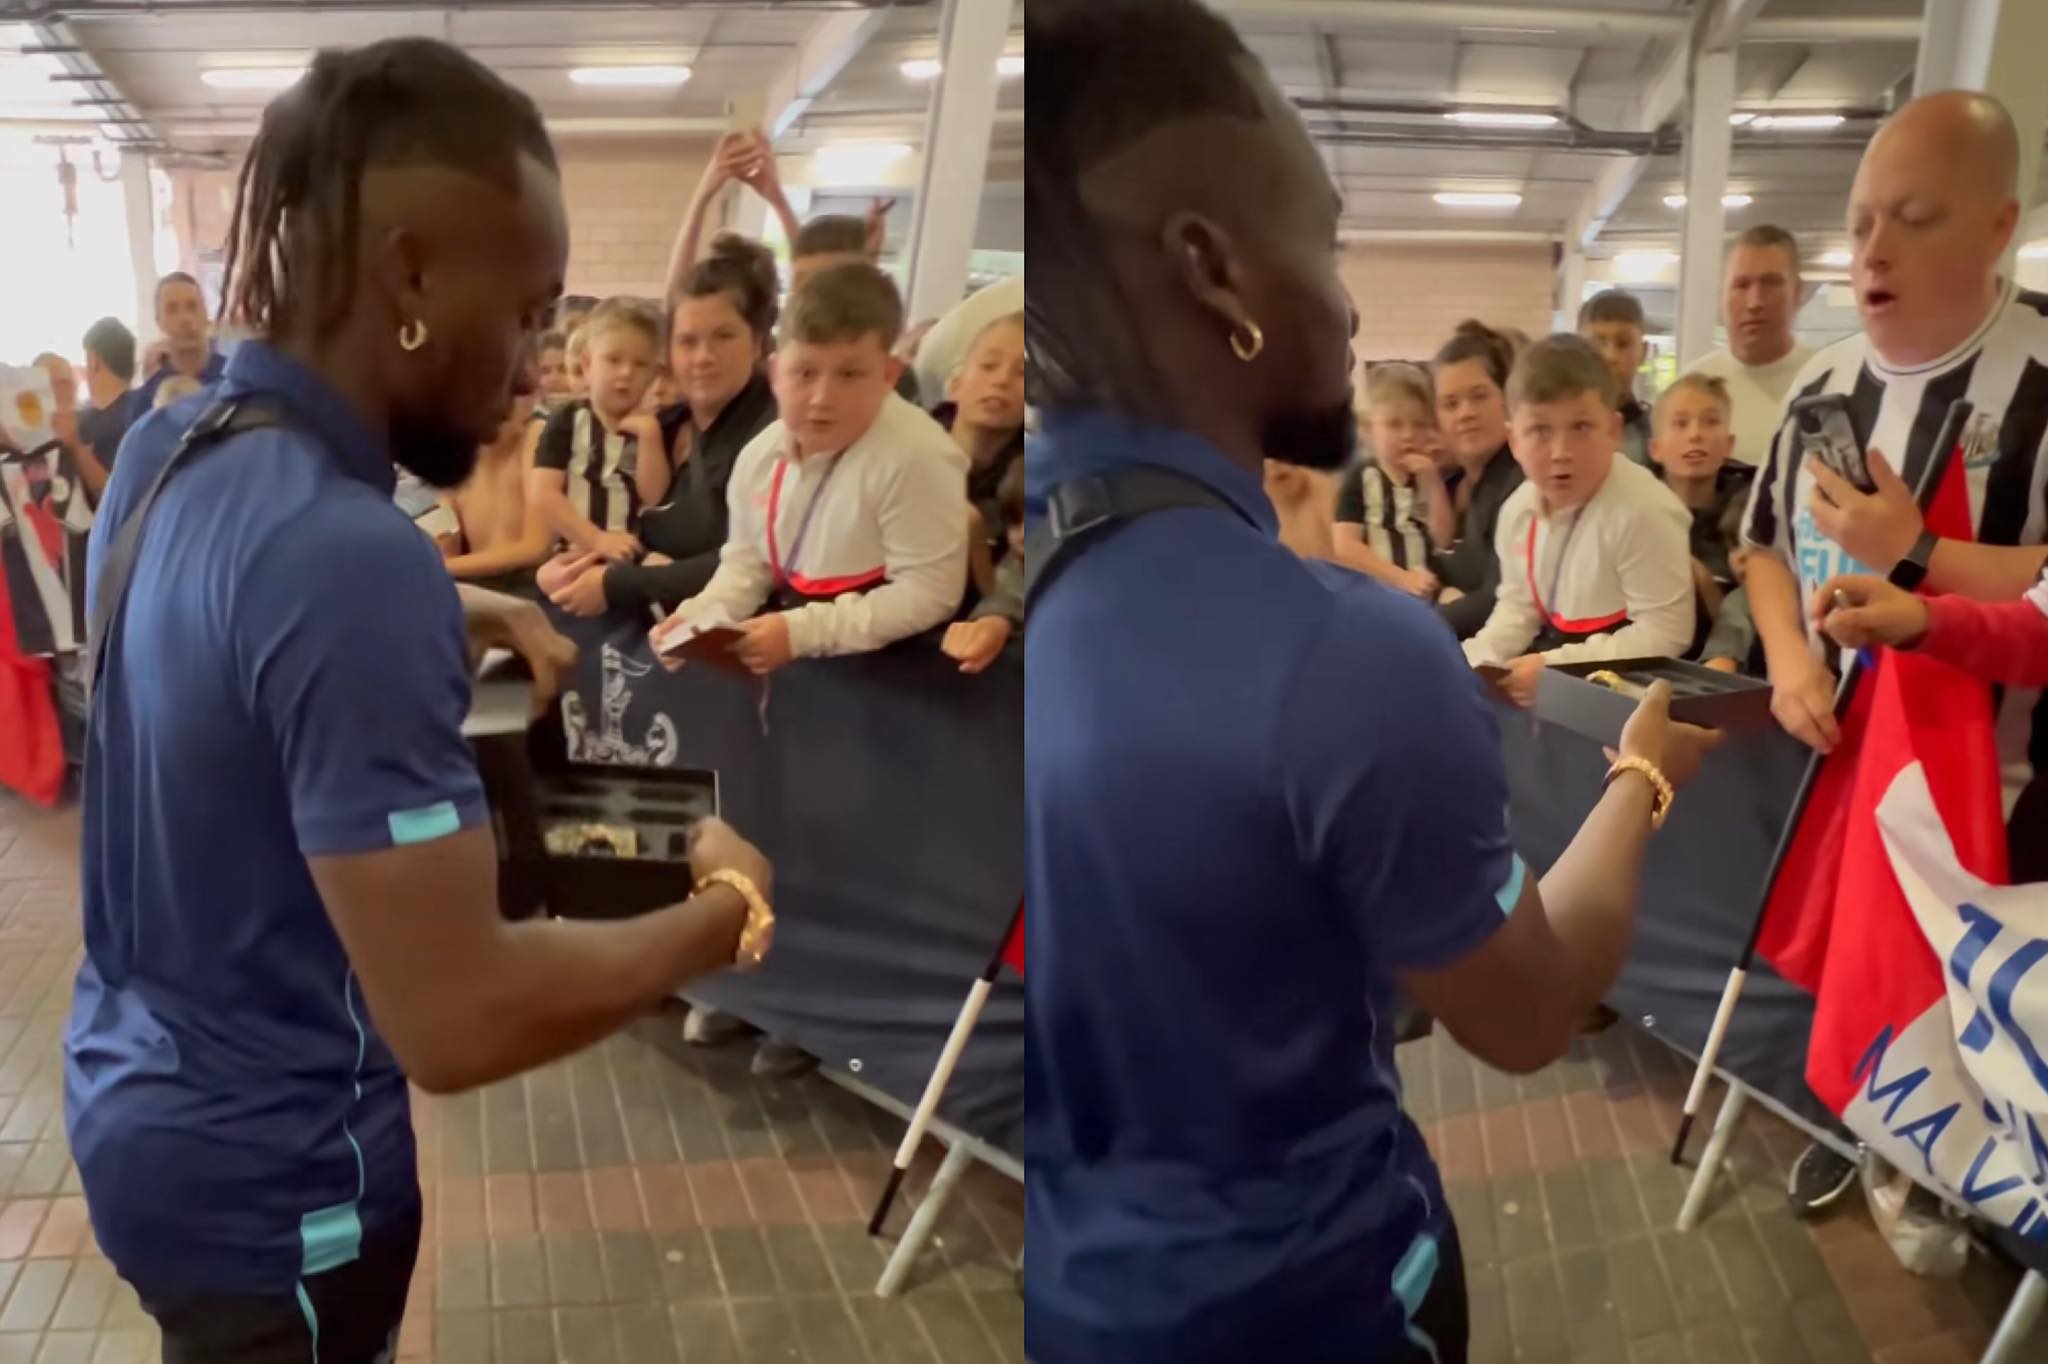 Premier League, un attaccante regala un Rolex a un tifoso – VIDEO